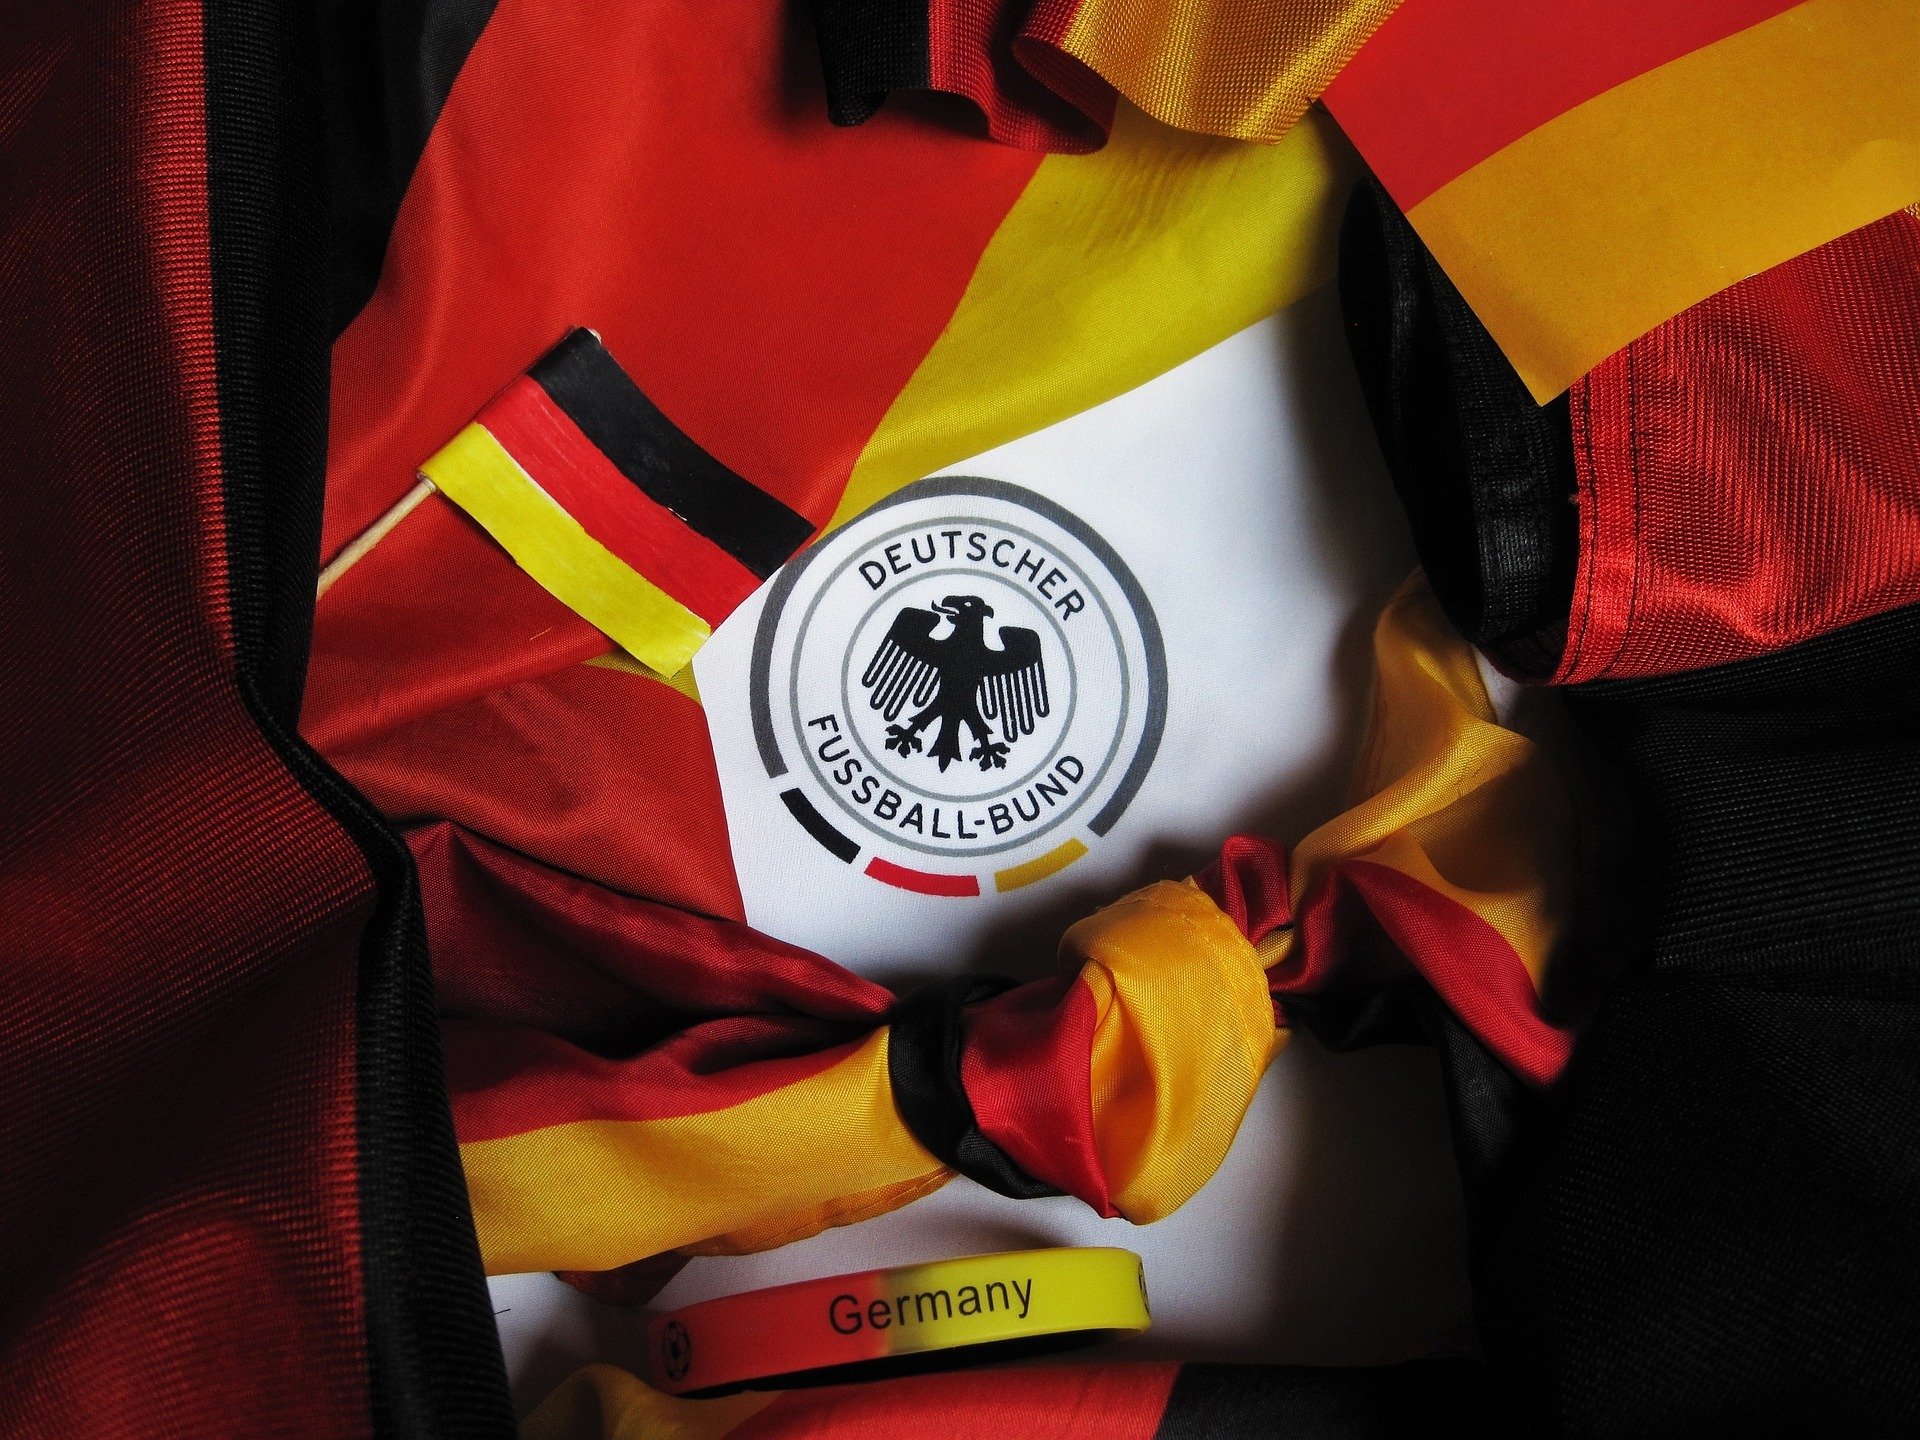 A Seleção da Alemanha é tetracampeã do mundo e uma das mais tradicionais do futebol. Confira quem é o maior artilheiro da Alemanha.